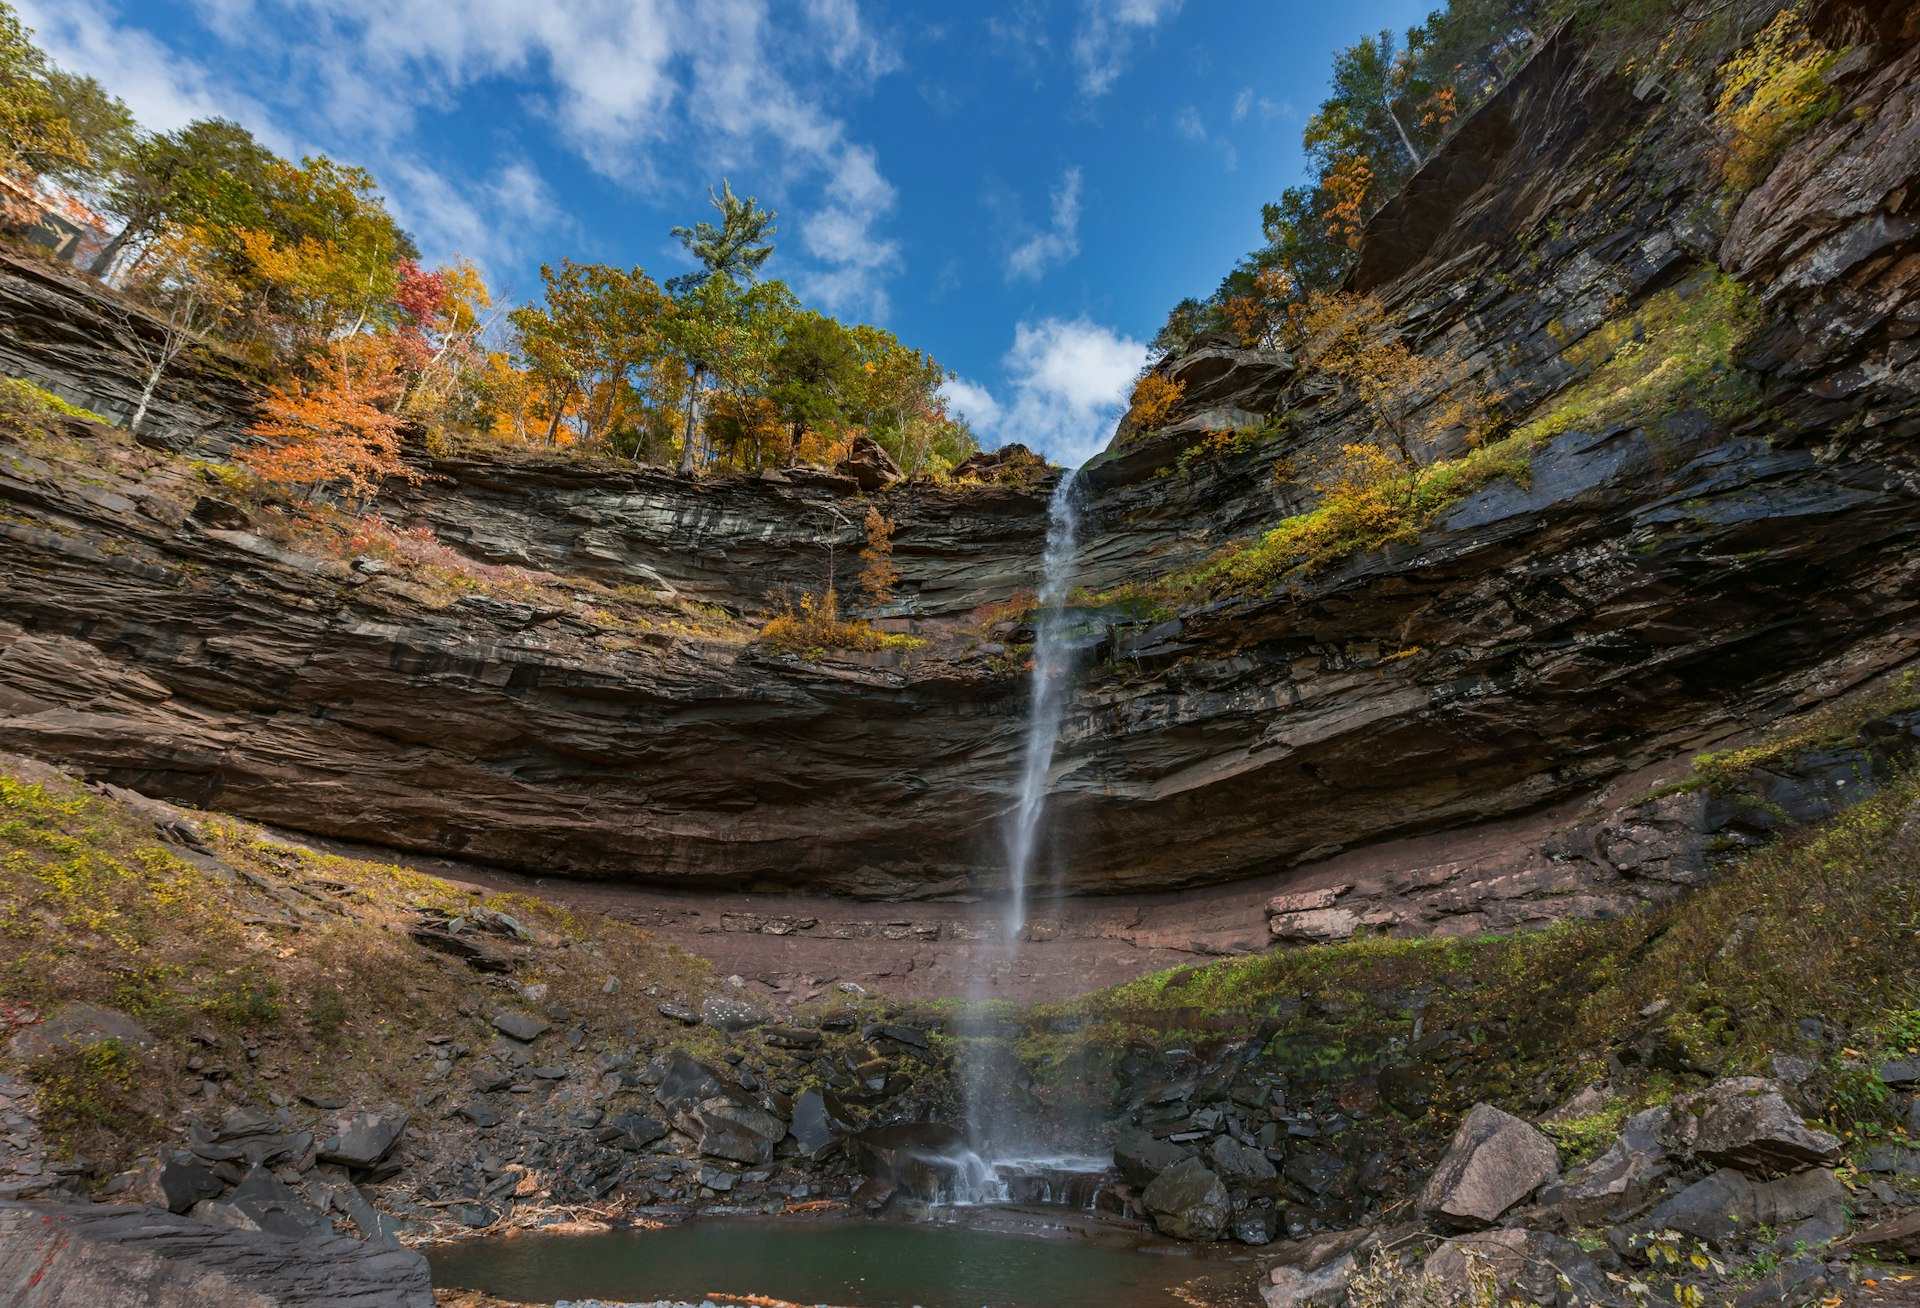 Kaaterskill Falls amid a fall backdrop in New York's Catskills